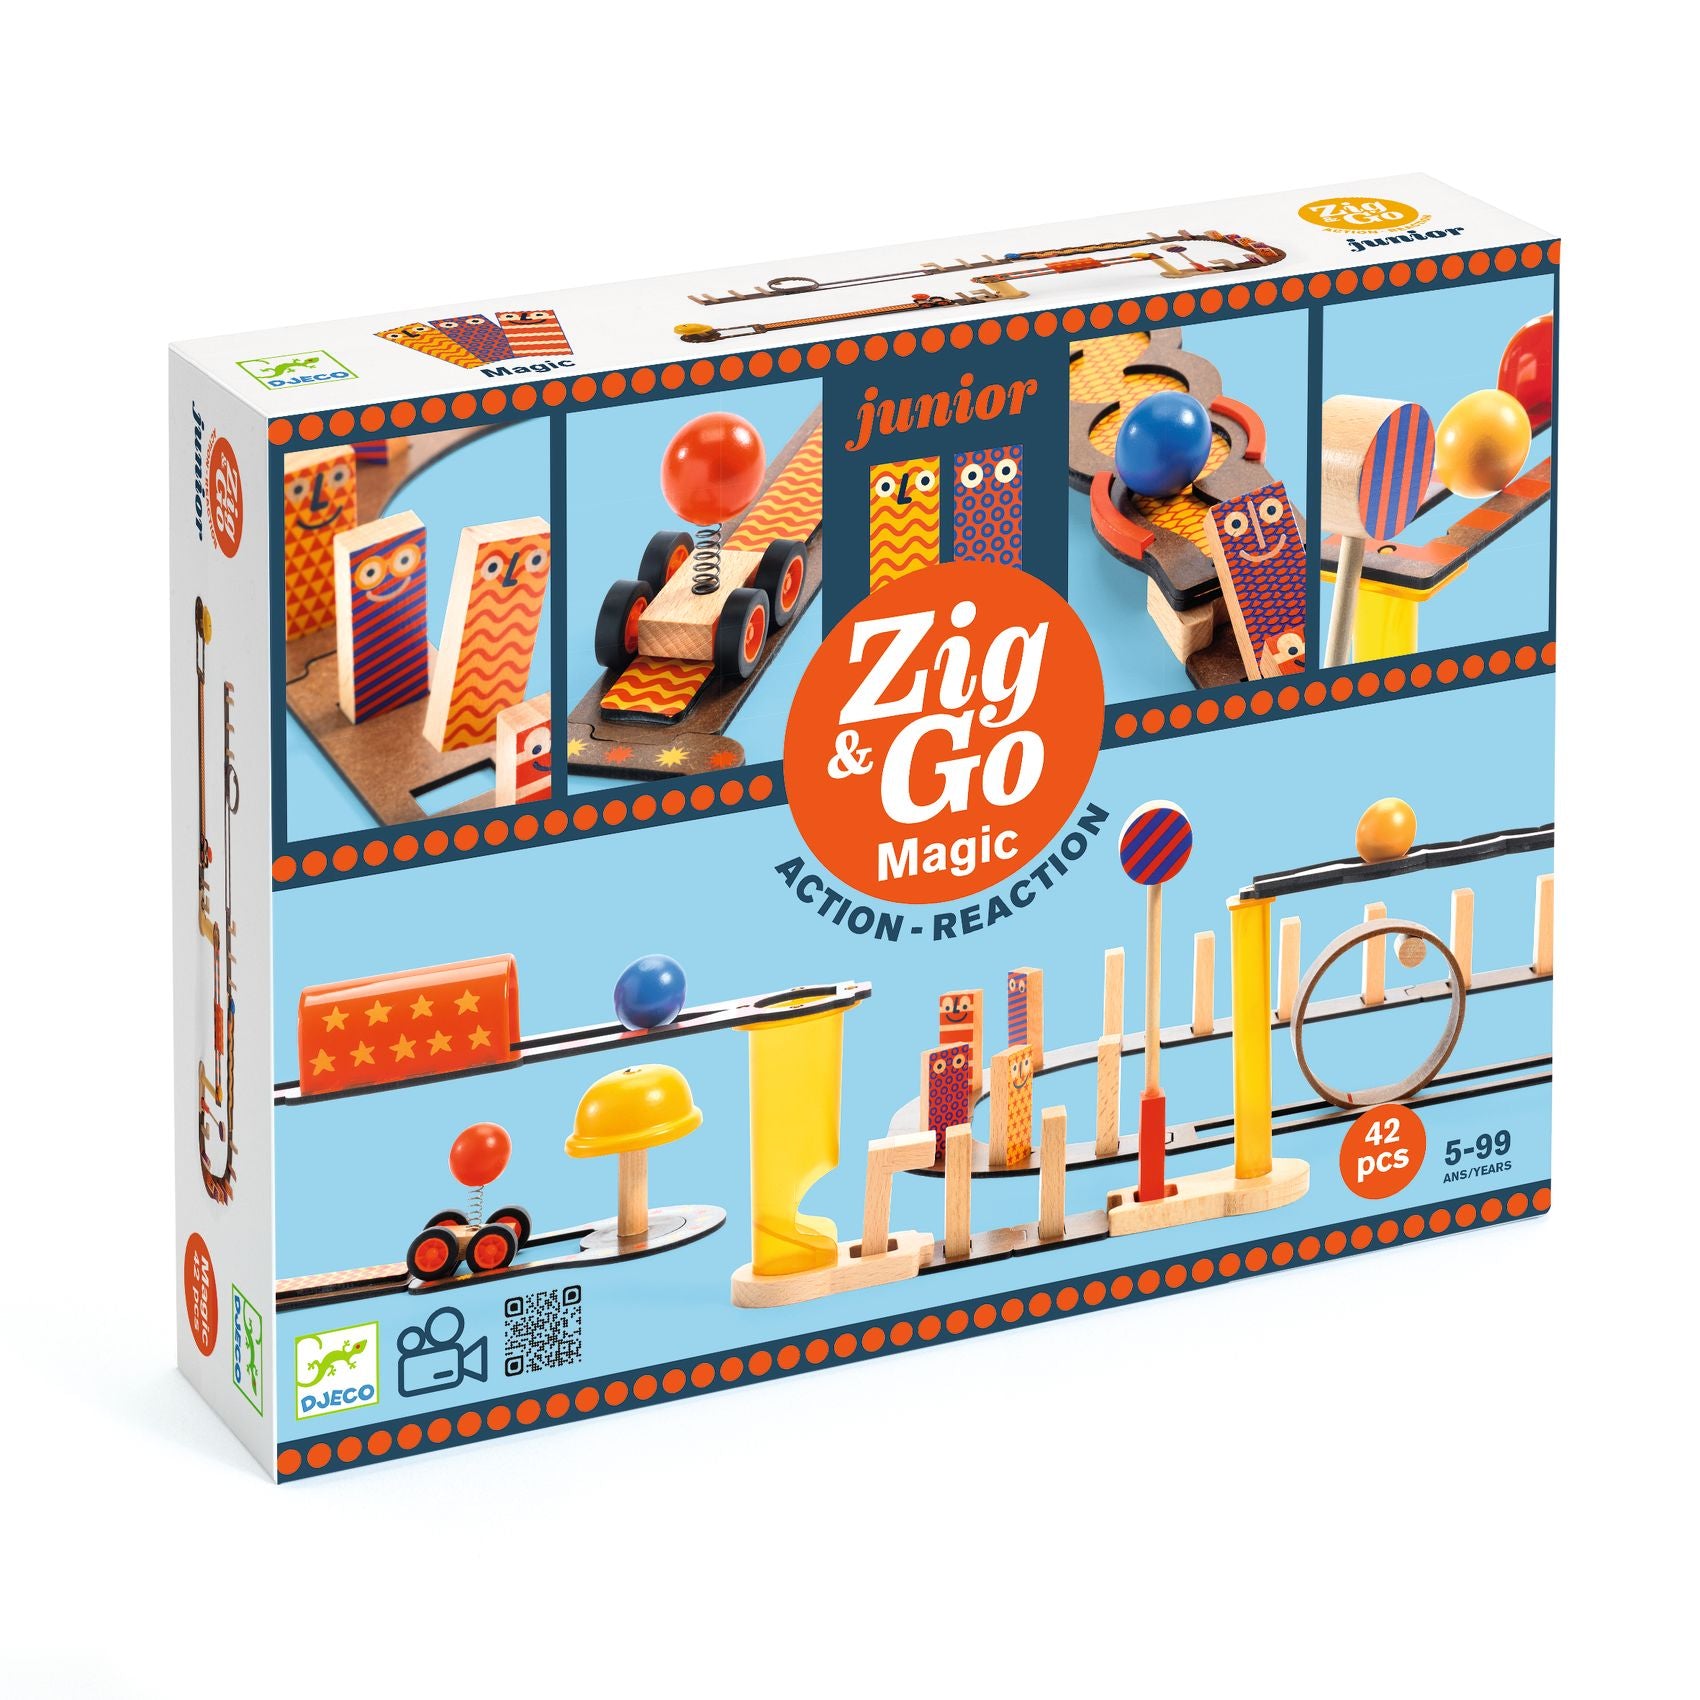 Construcción Zig & Go Junior Magic 42 piezas